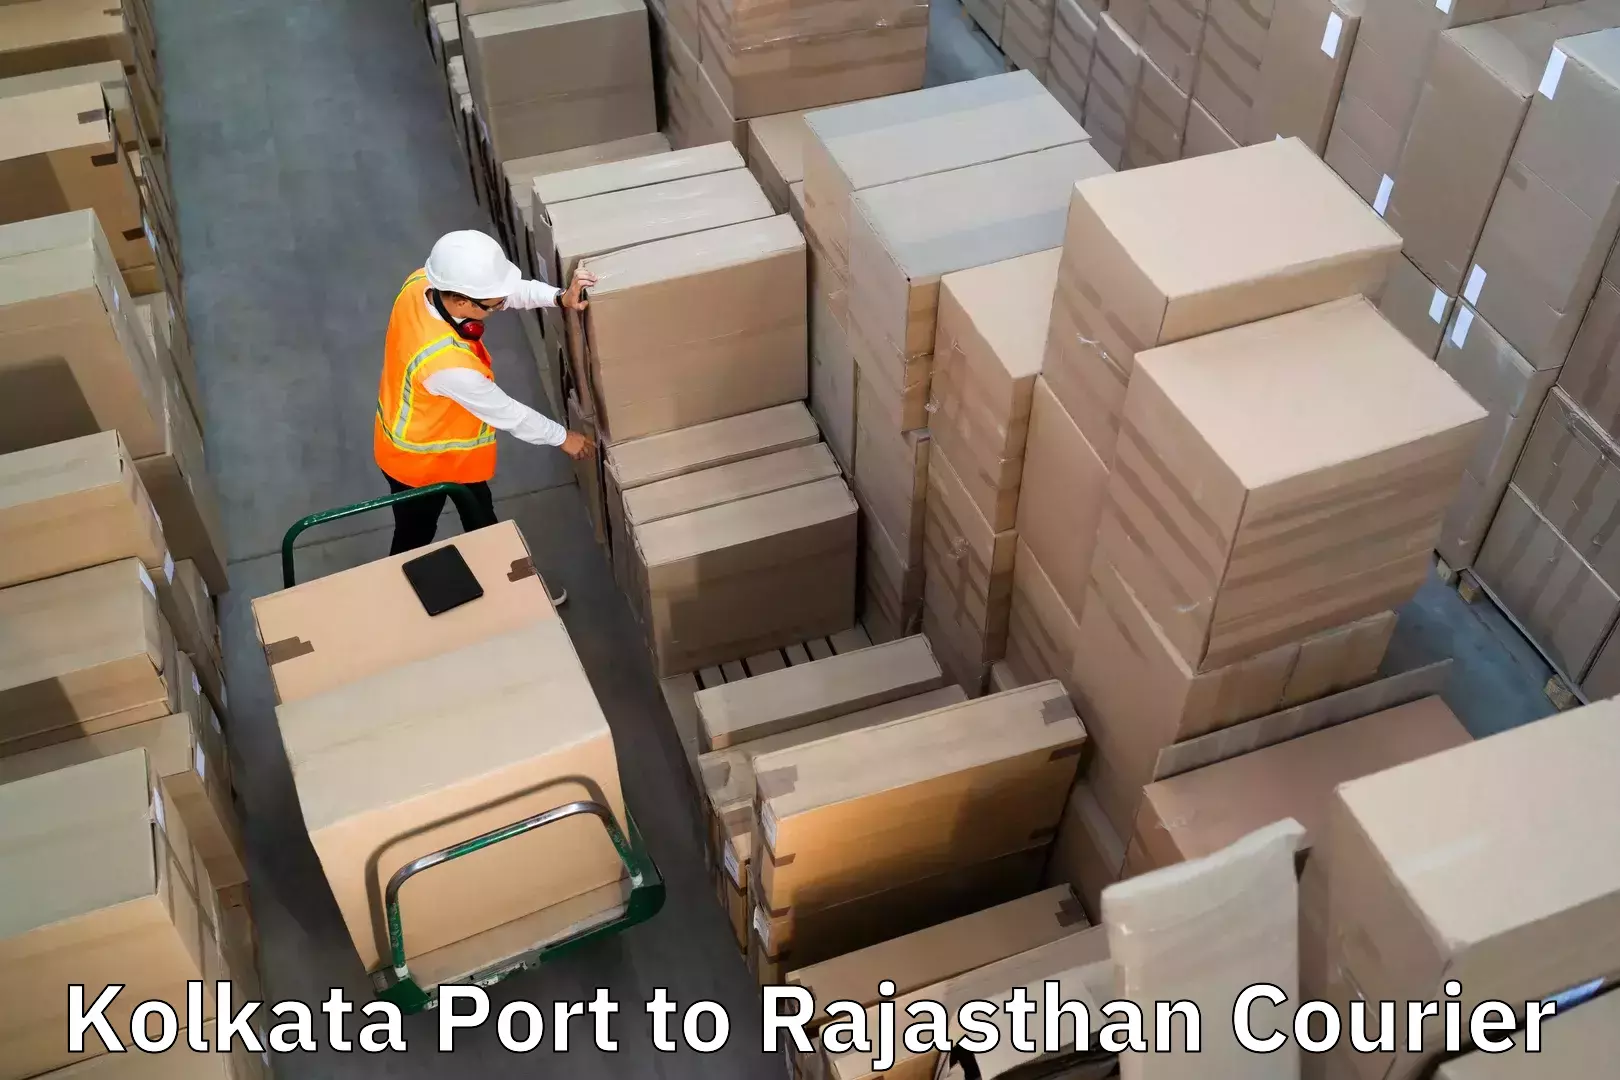 Baggage transport scheduler Kolkata Port to Bansur